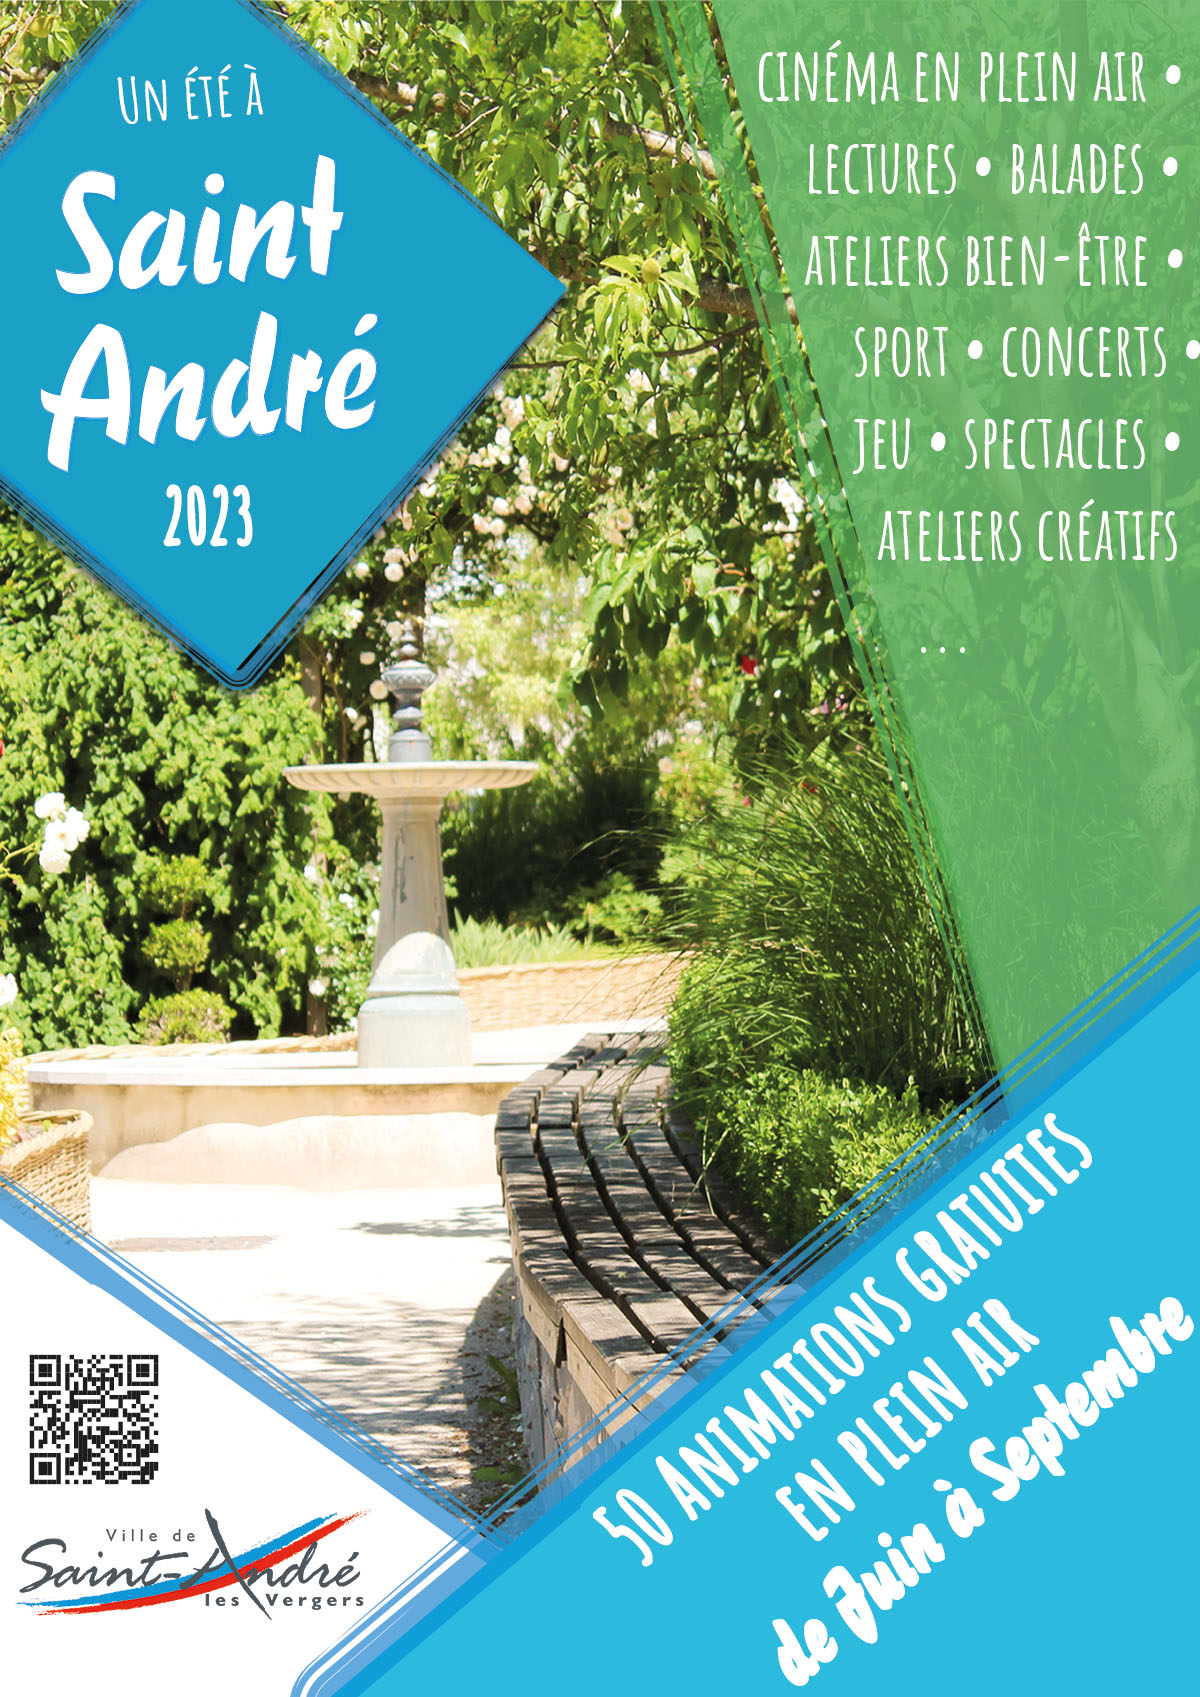 Un été à Saint-André 2023